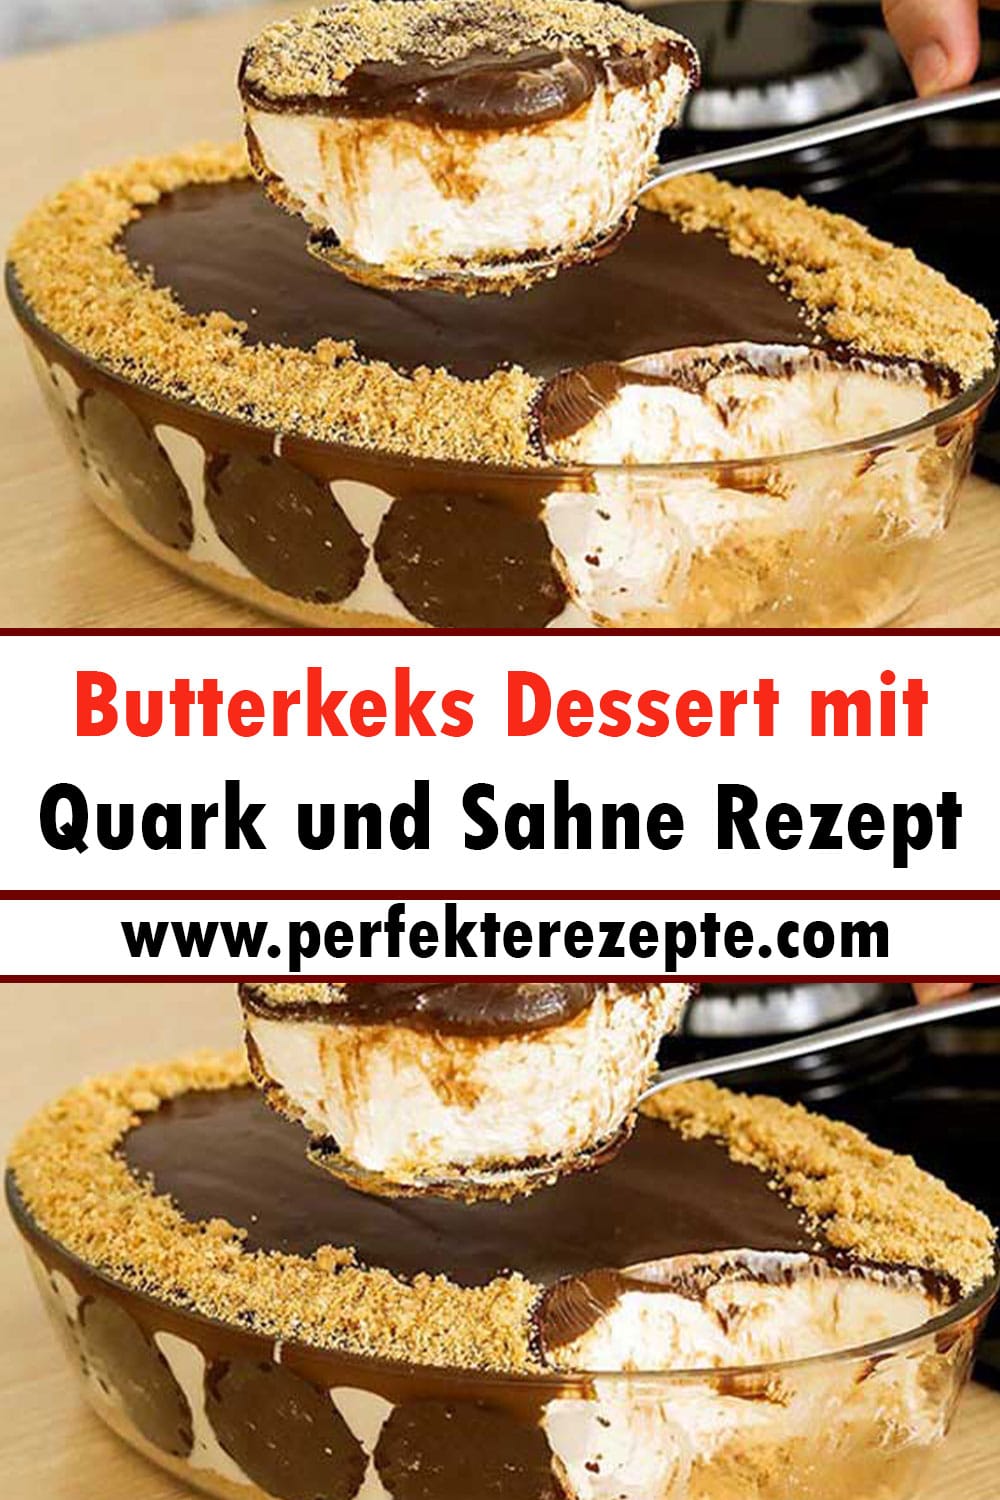 Butterkeks Dessert mit Quark und Sahne Rezept